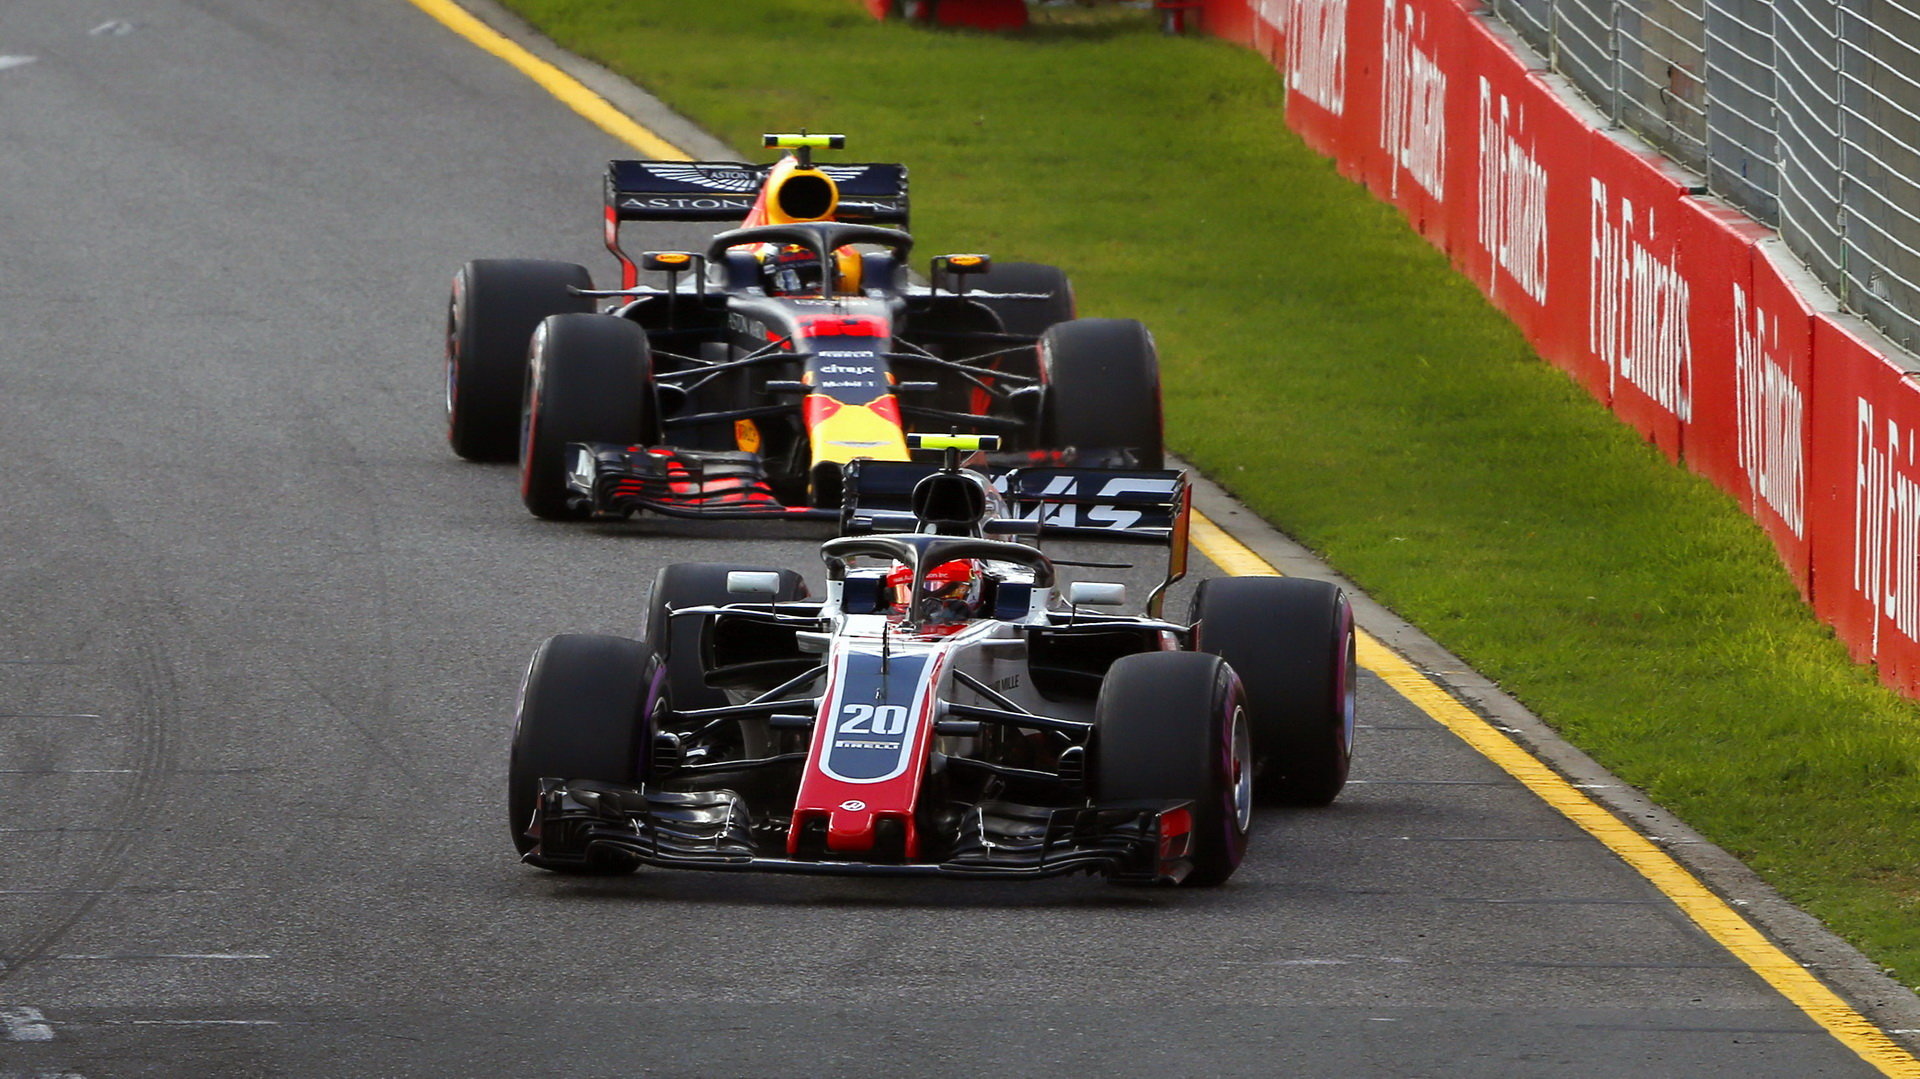 Romain Grosjean před Maxem Verstappenem, ze závodu v Austrálii žel musel kvůli špatně upevněnému kolu stejně jako jeho týmový kolega Kevin Magnussen předčasně odstoupit